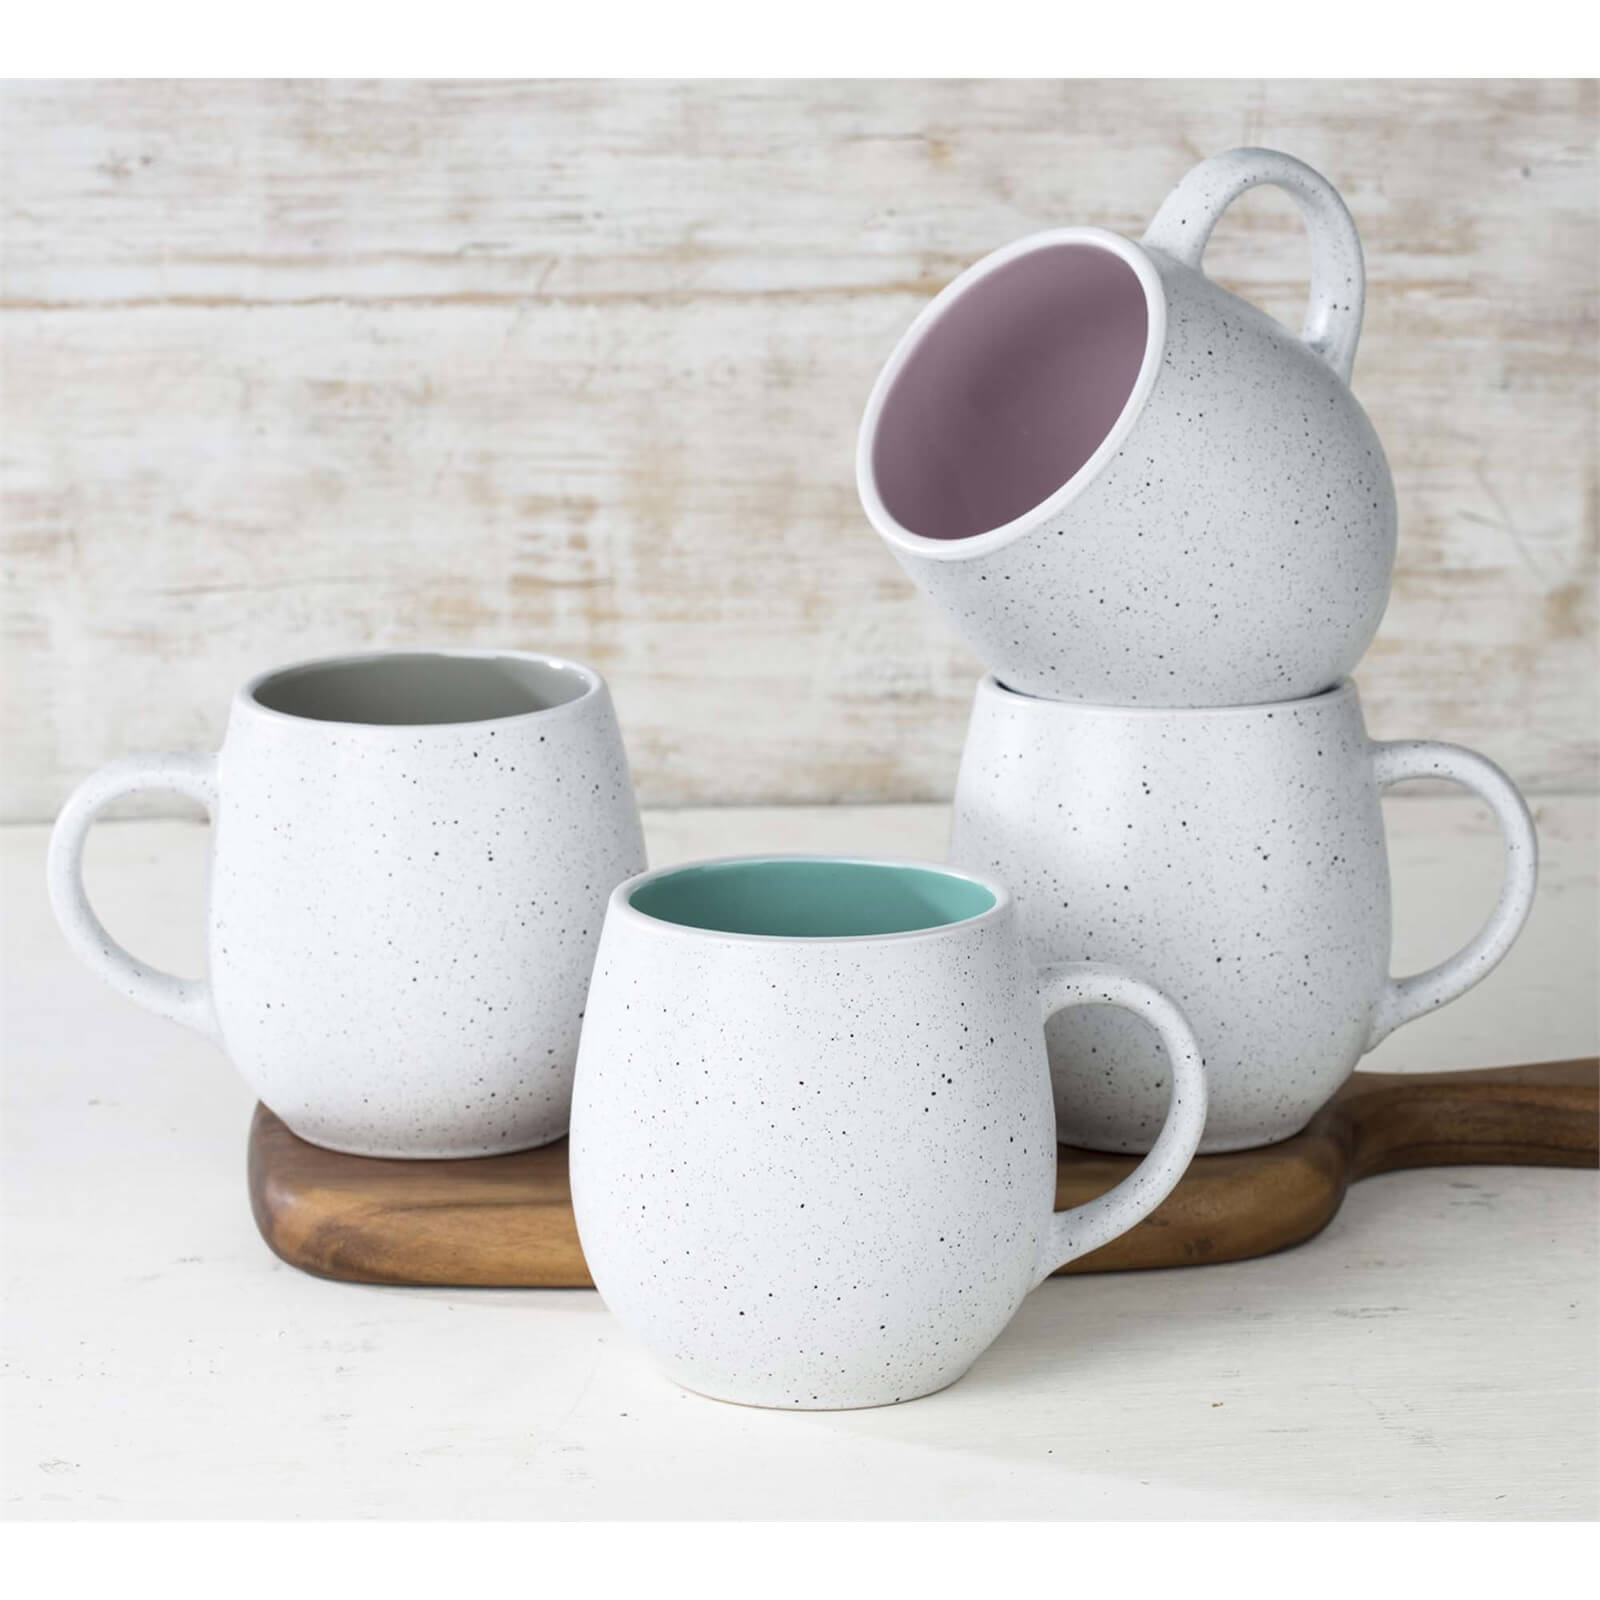 Speckled Hug Mugs - Set of 4